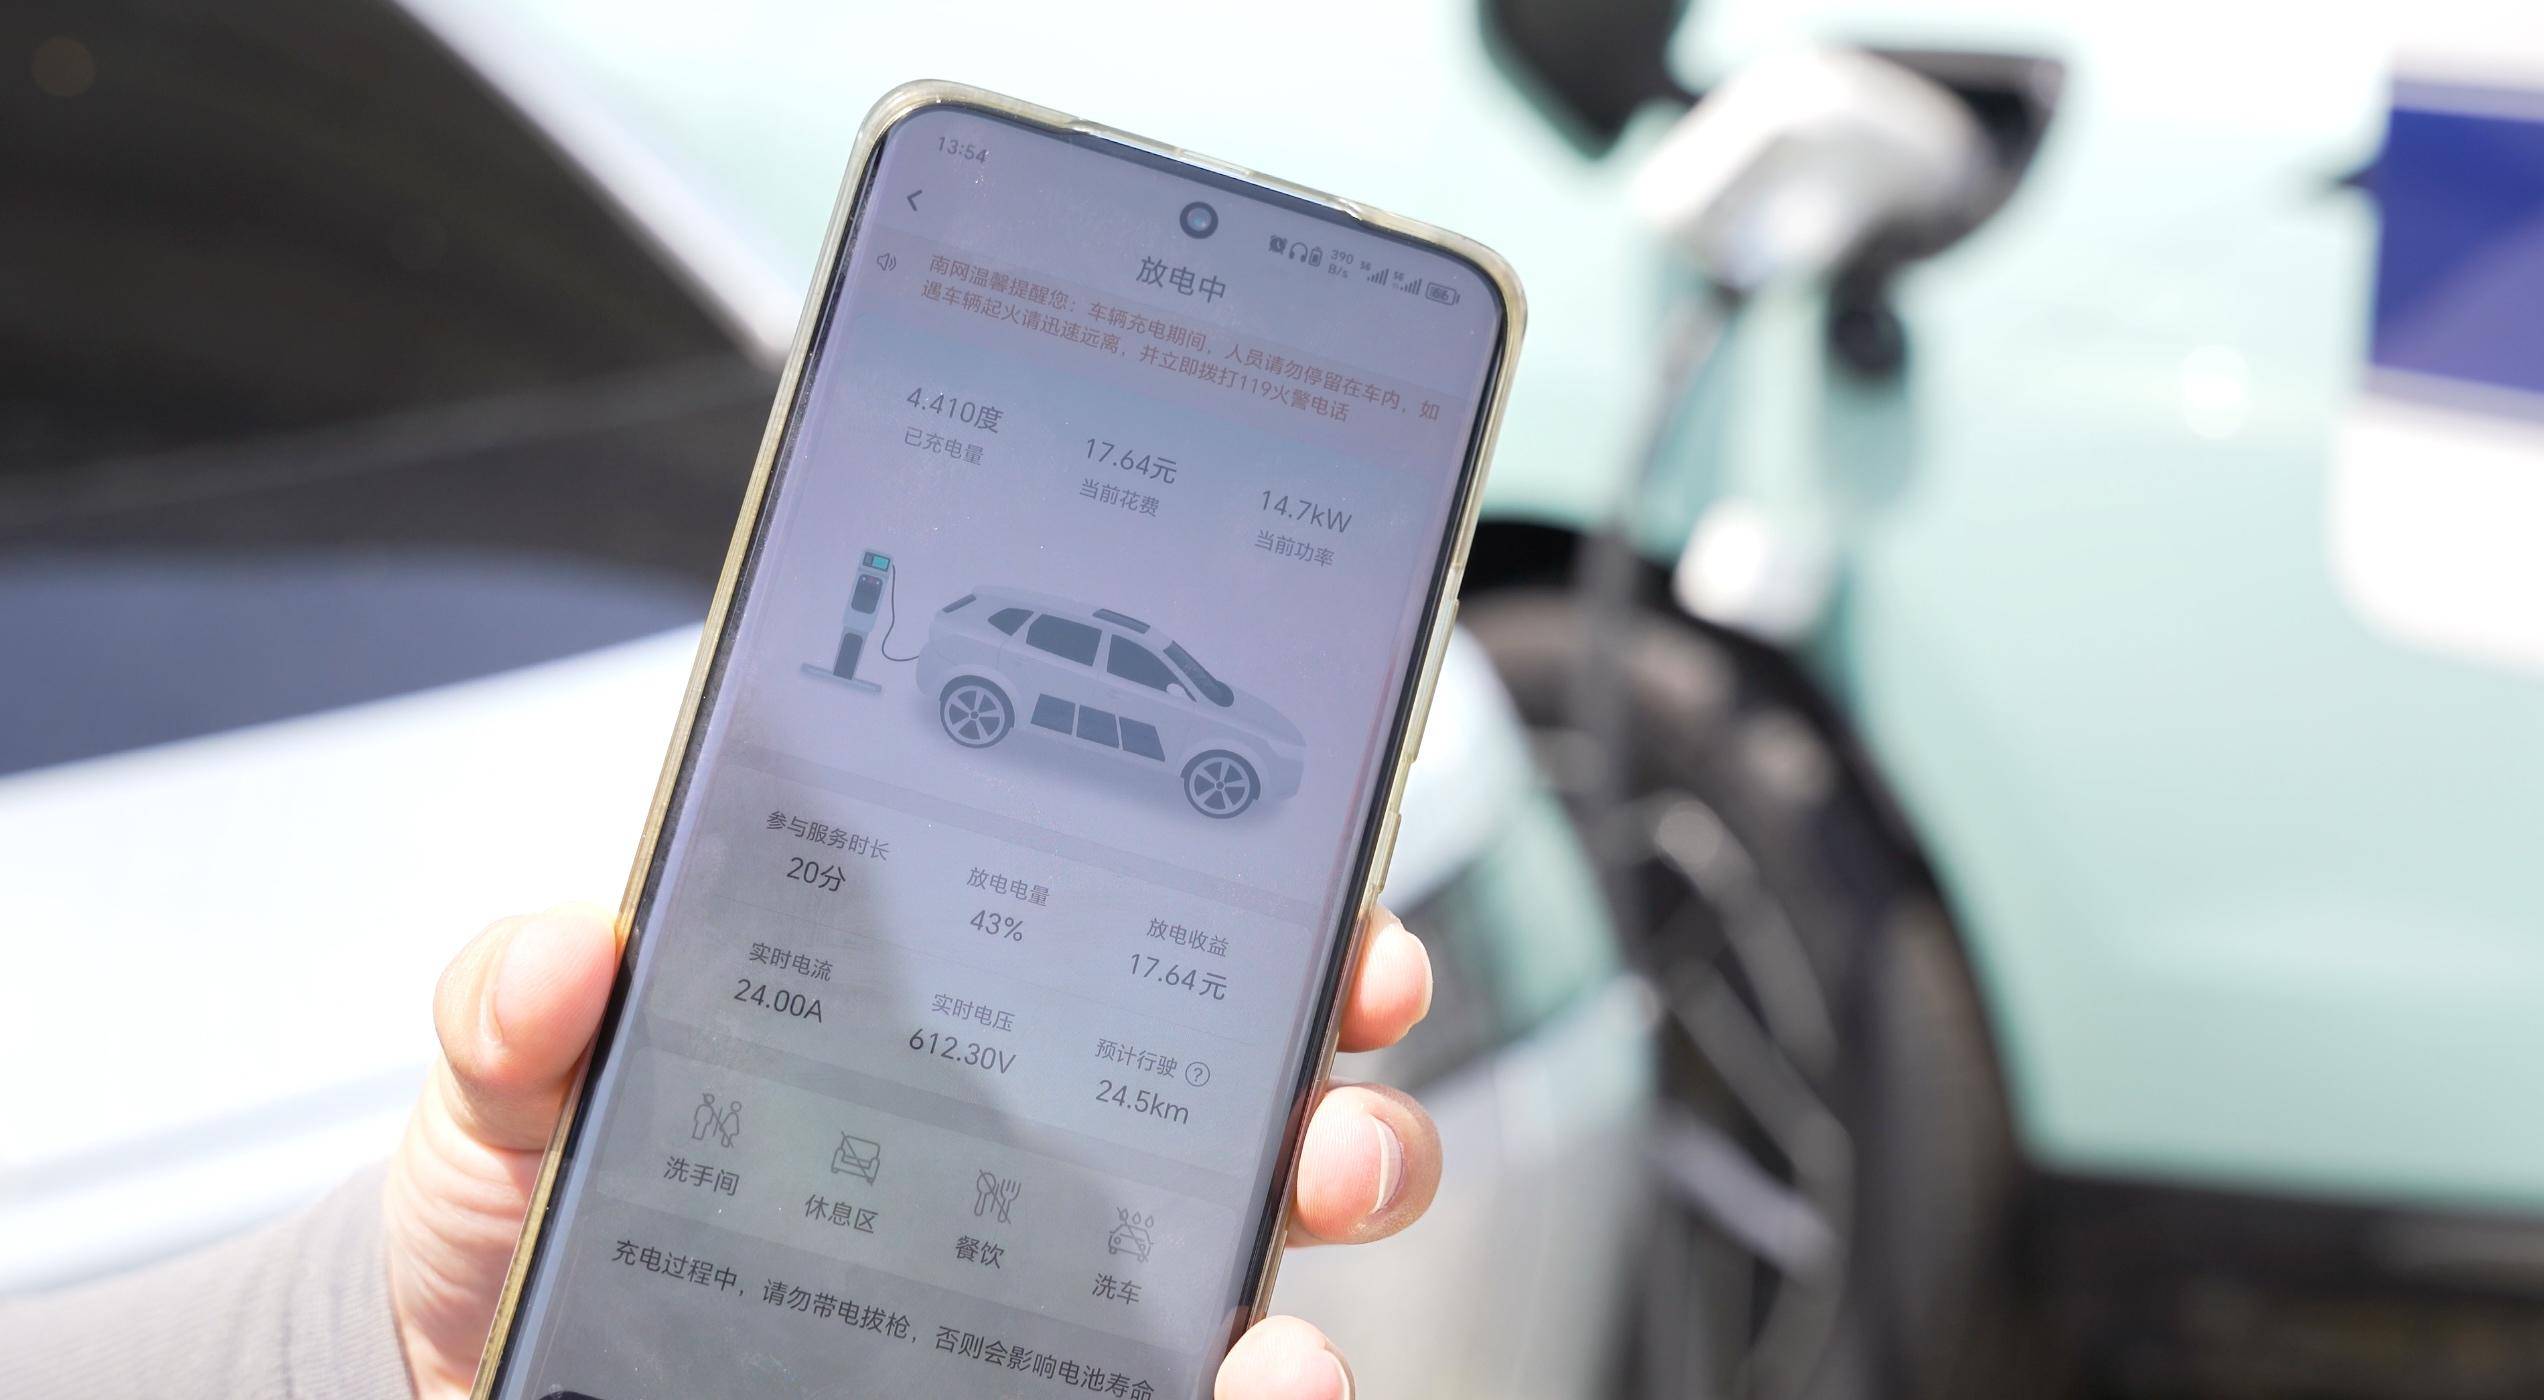 1473辆新能源汽车参与！深圳开展全国最大规模车网互动应用